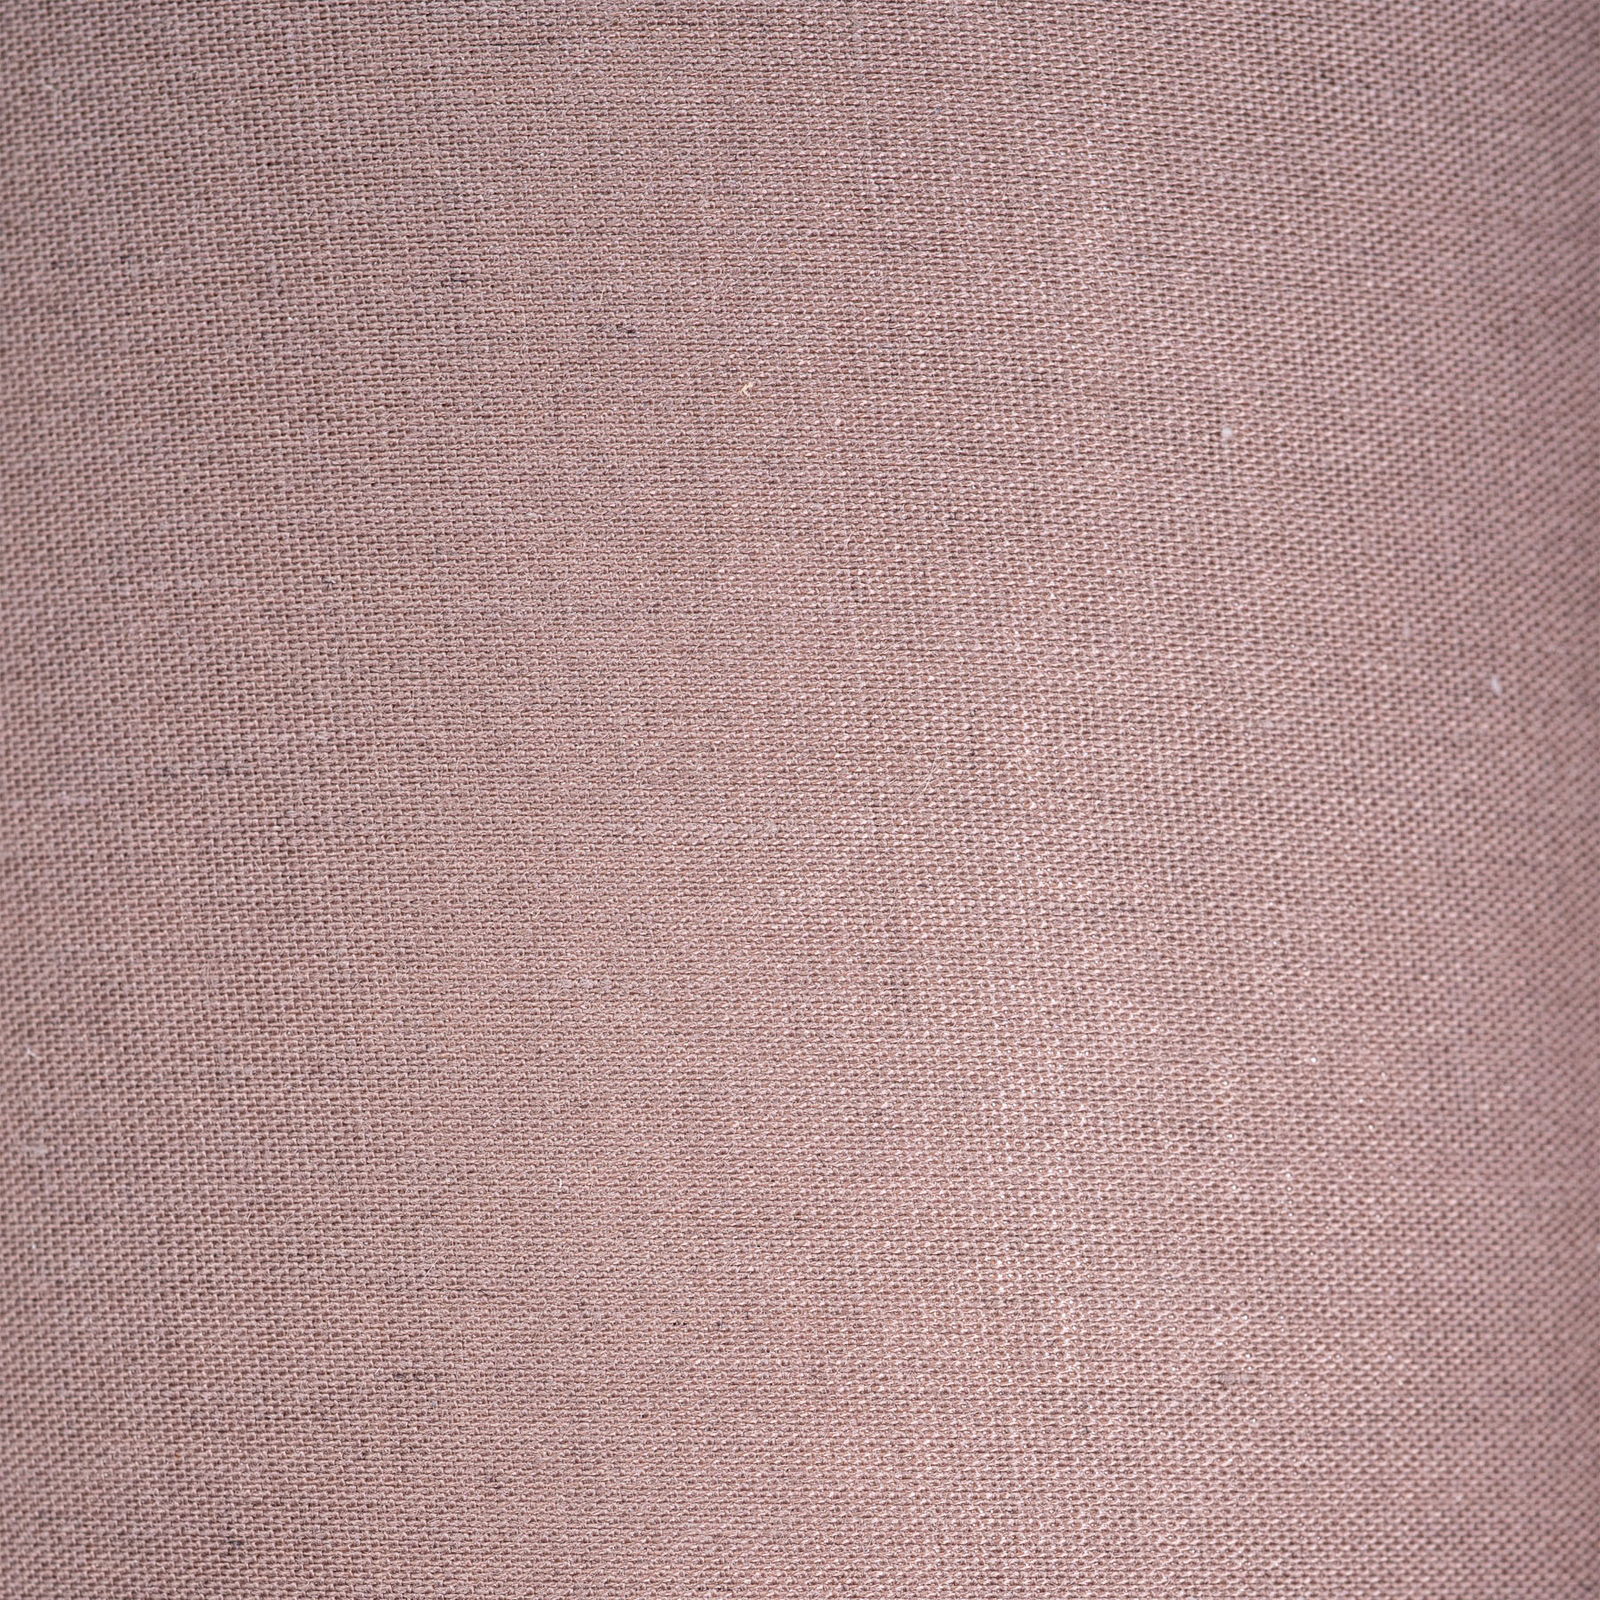 Deckenrondell Maron dreiflammig Textil, braun/gold